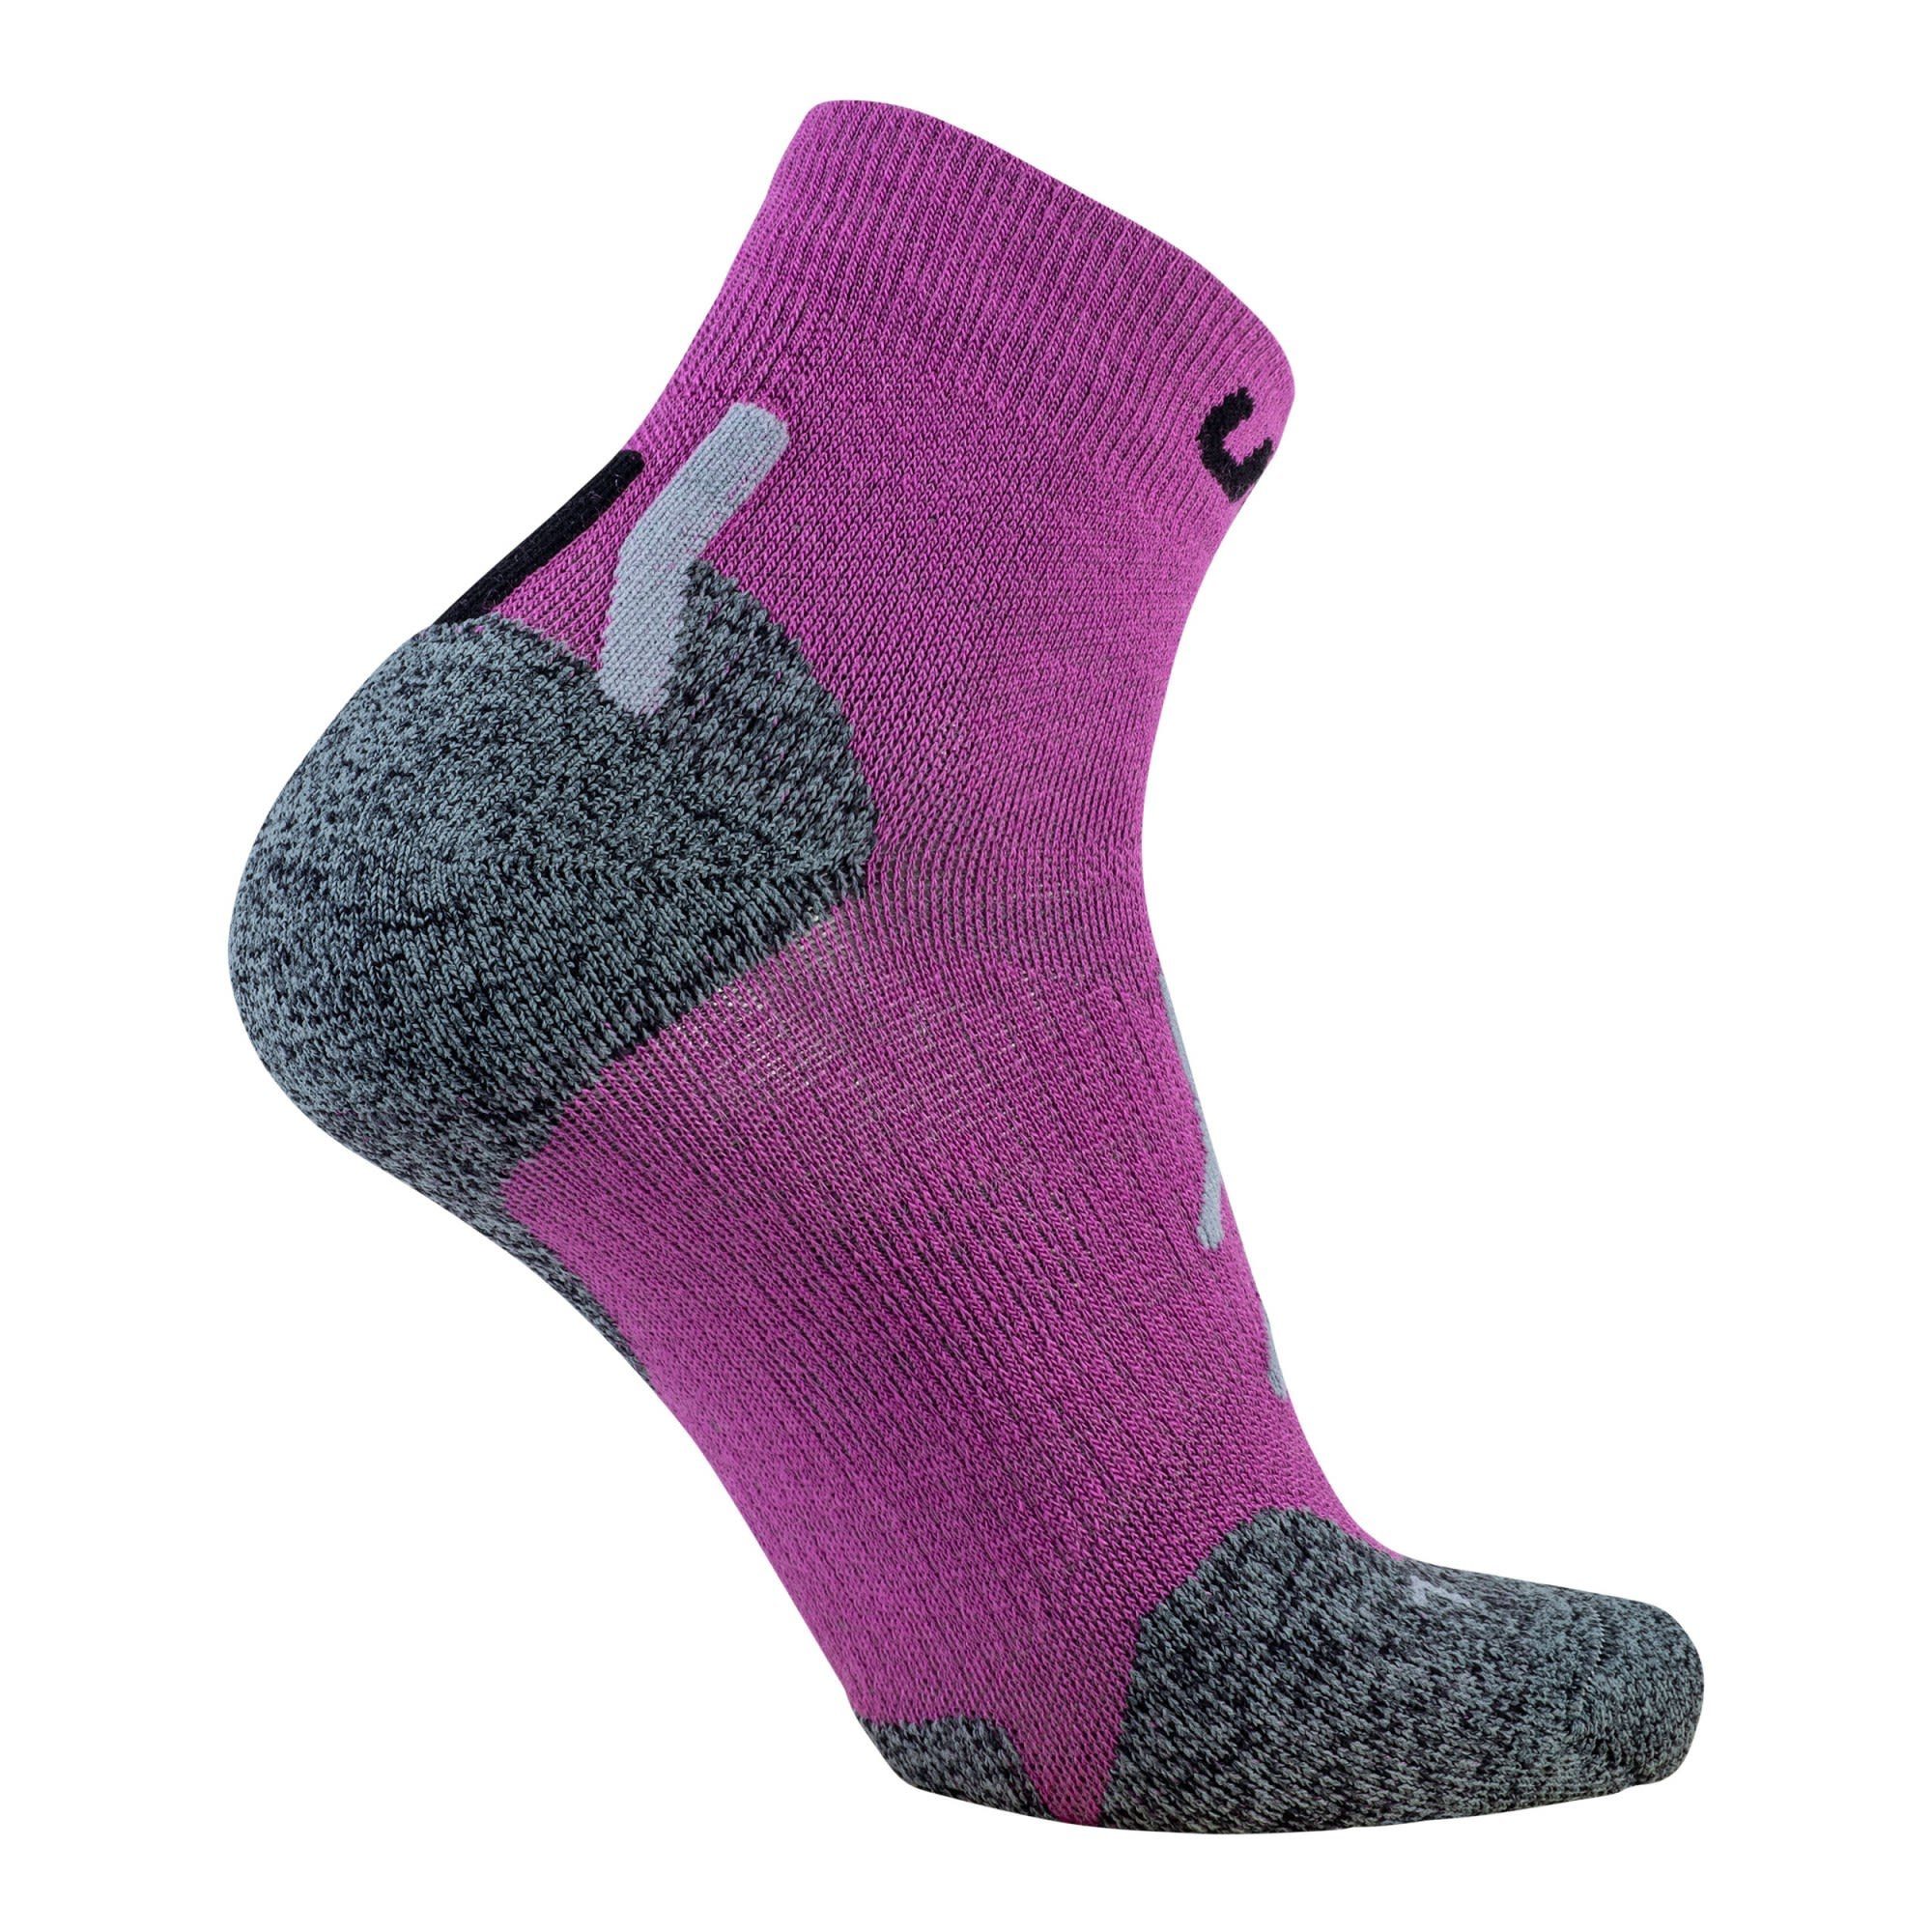 Uyn UYN Approach Damen Low W Merino Socks Trekking Socken Cut